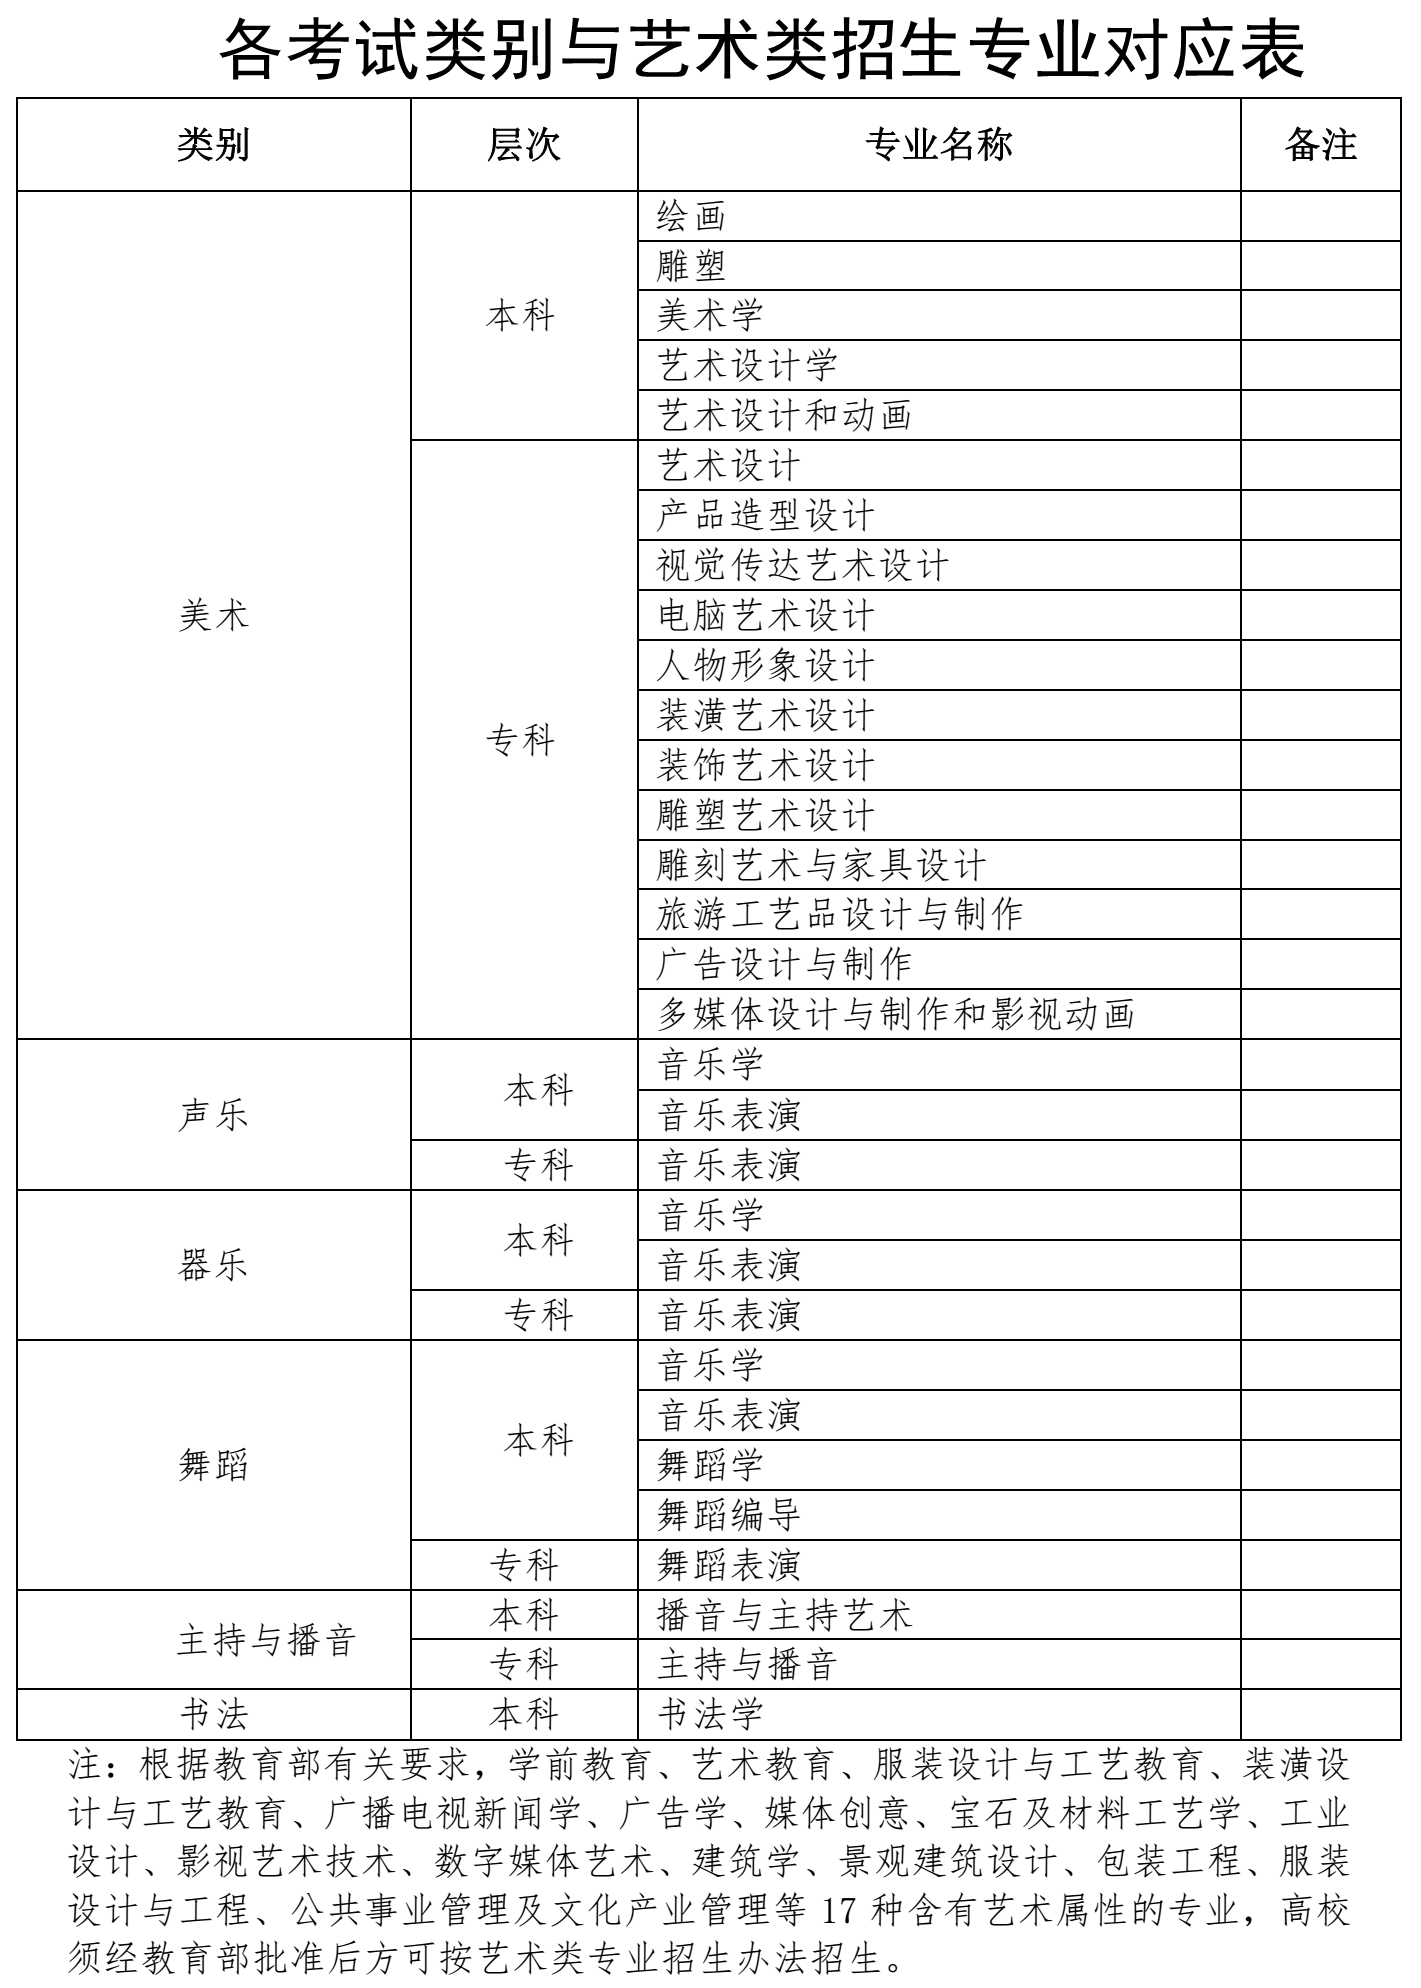 海南省考試局關于做好2022年海南省普通高等學校招生藝術類專業考試工作的通知